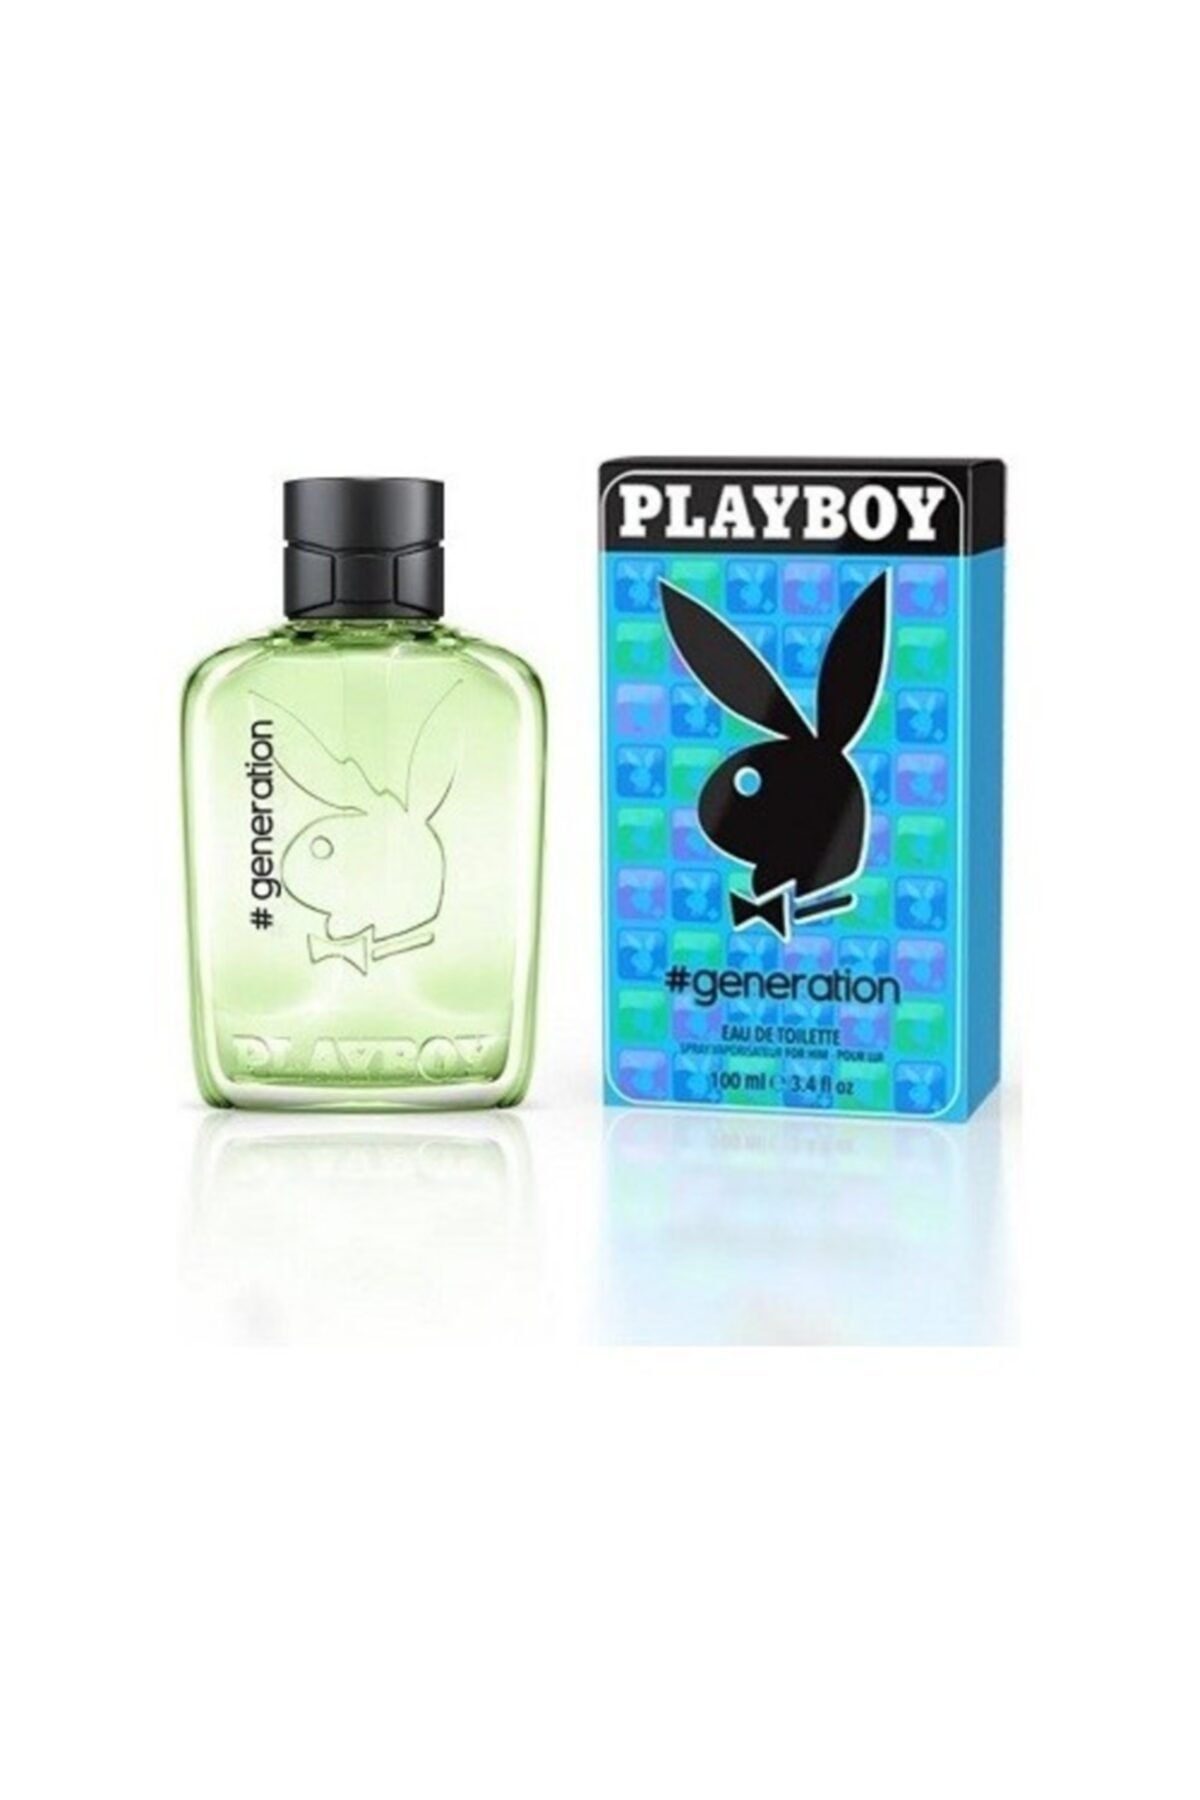 Playboy Generatıon Edt 60ml